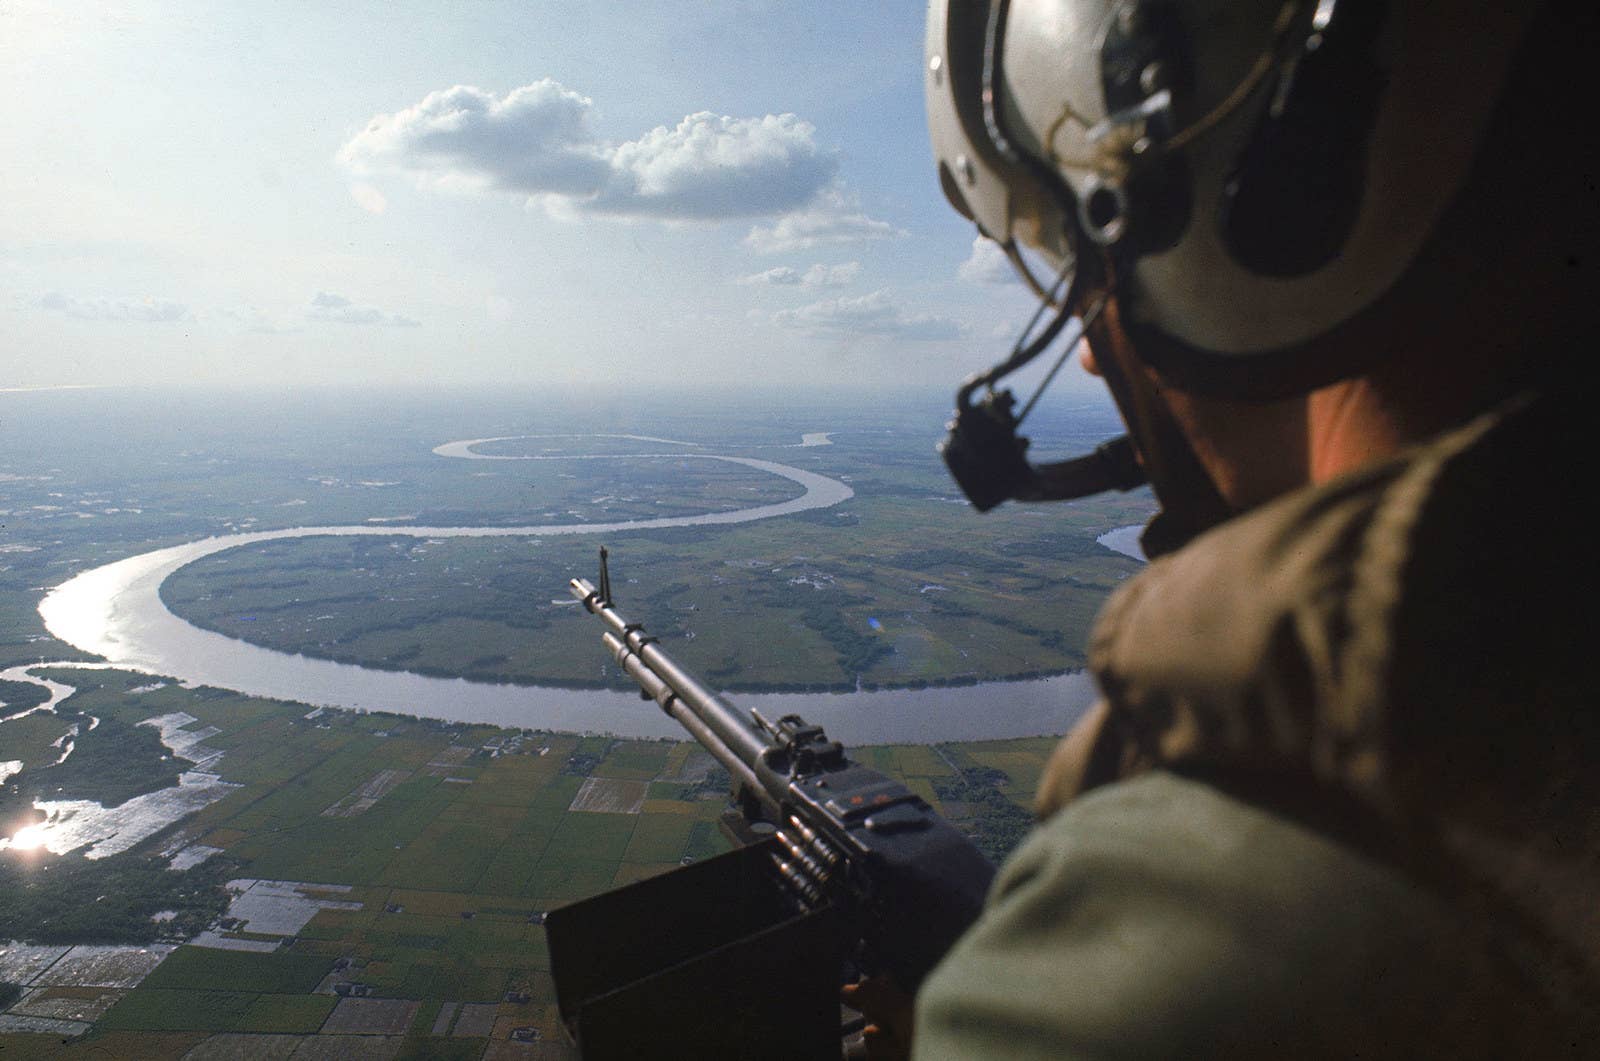 Atirador sobrevoa o rio Mekong à procura de vietcongues.